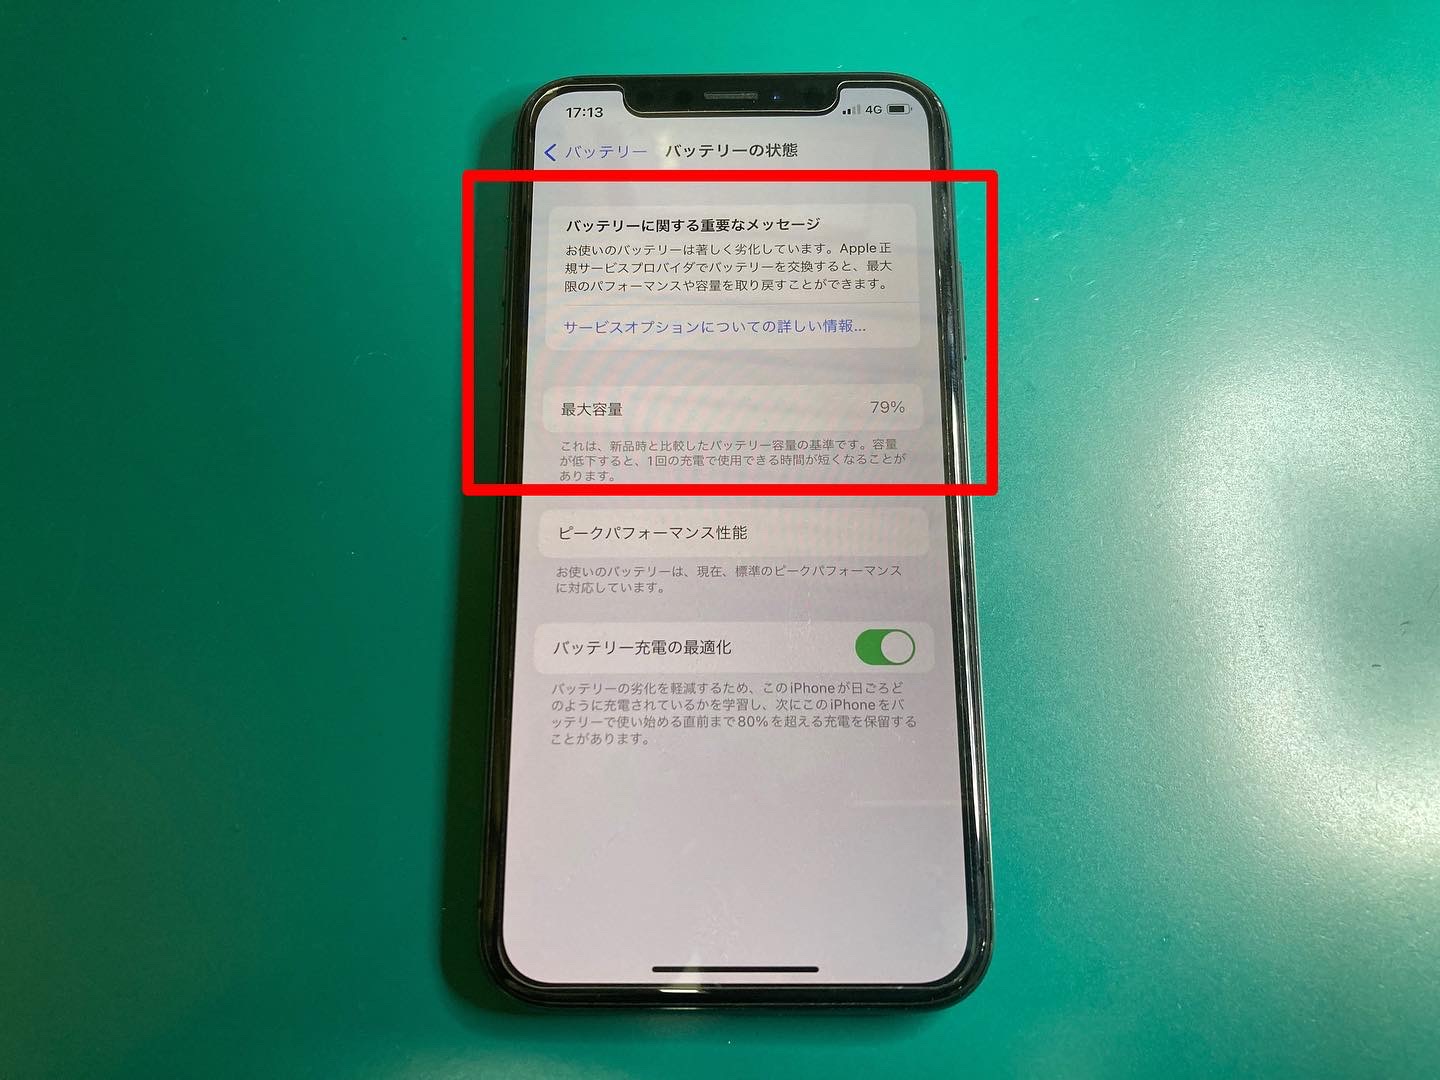 バッテリー劣化のメッセージが表示されているiPhoneバッテリー交換修理60分〜お気軽にご相談ください。